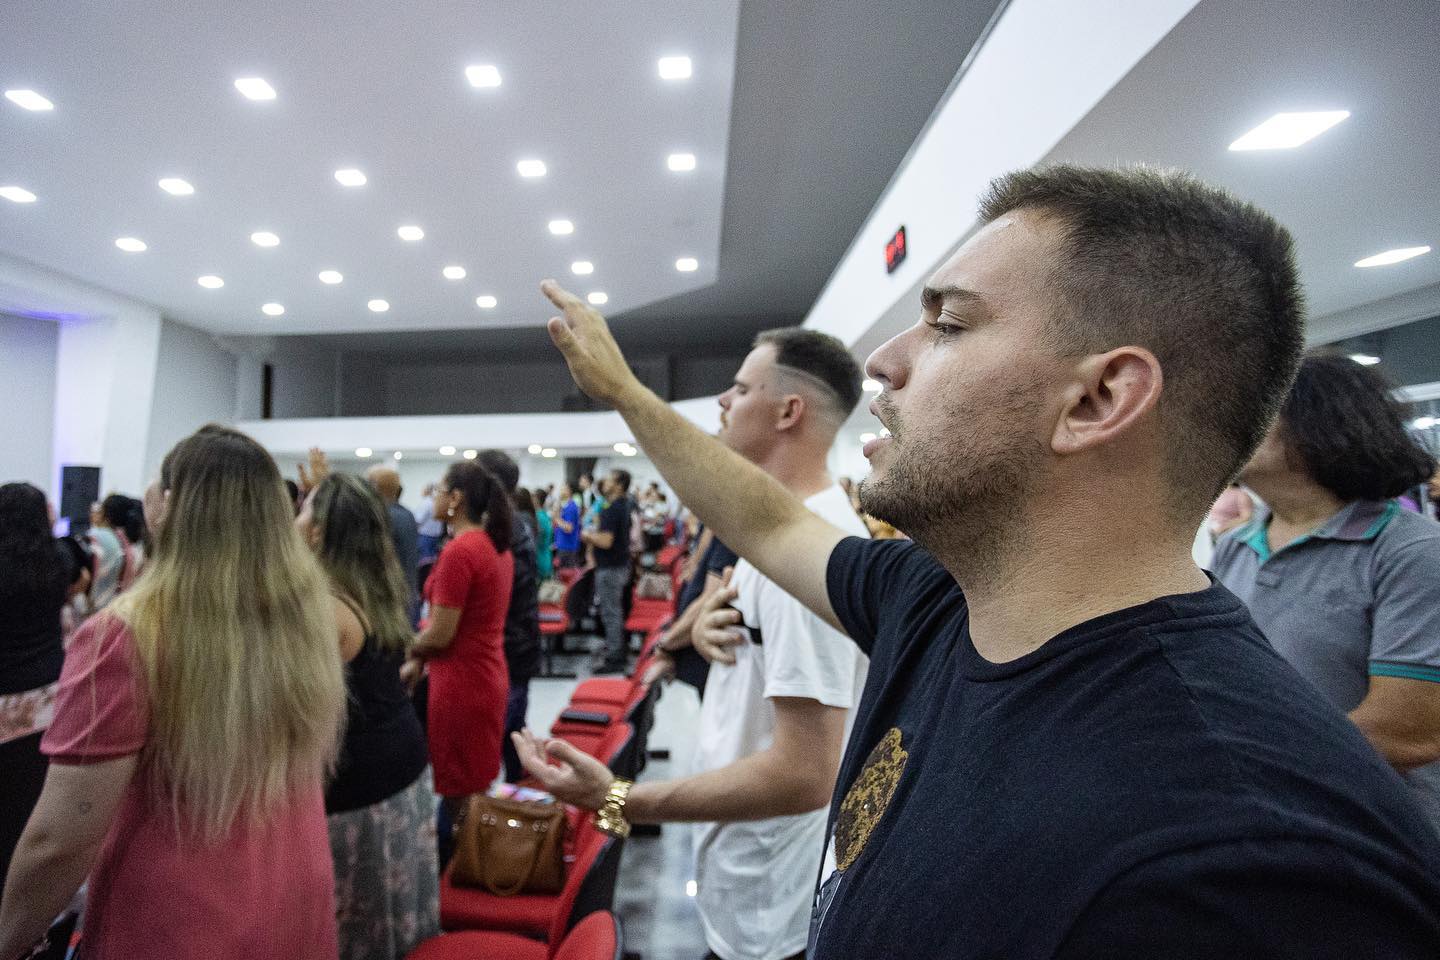 Igrejas evangélicas se multiplicaram no Brasil nas últimas décadas